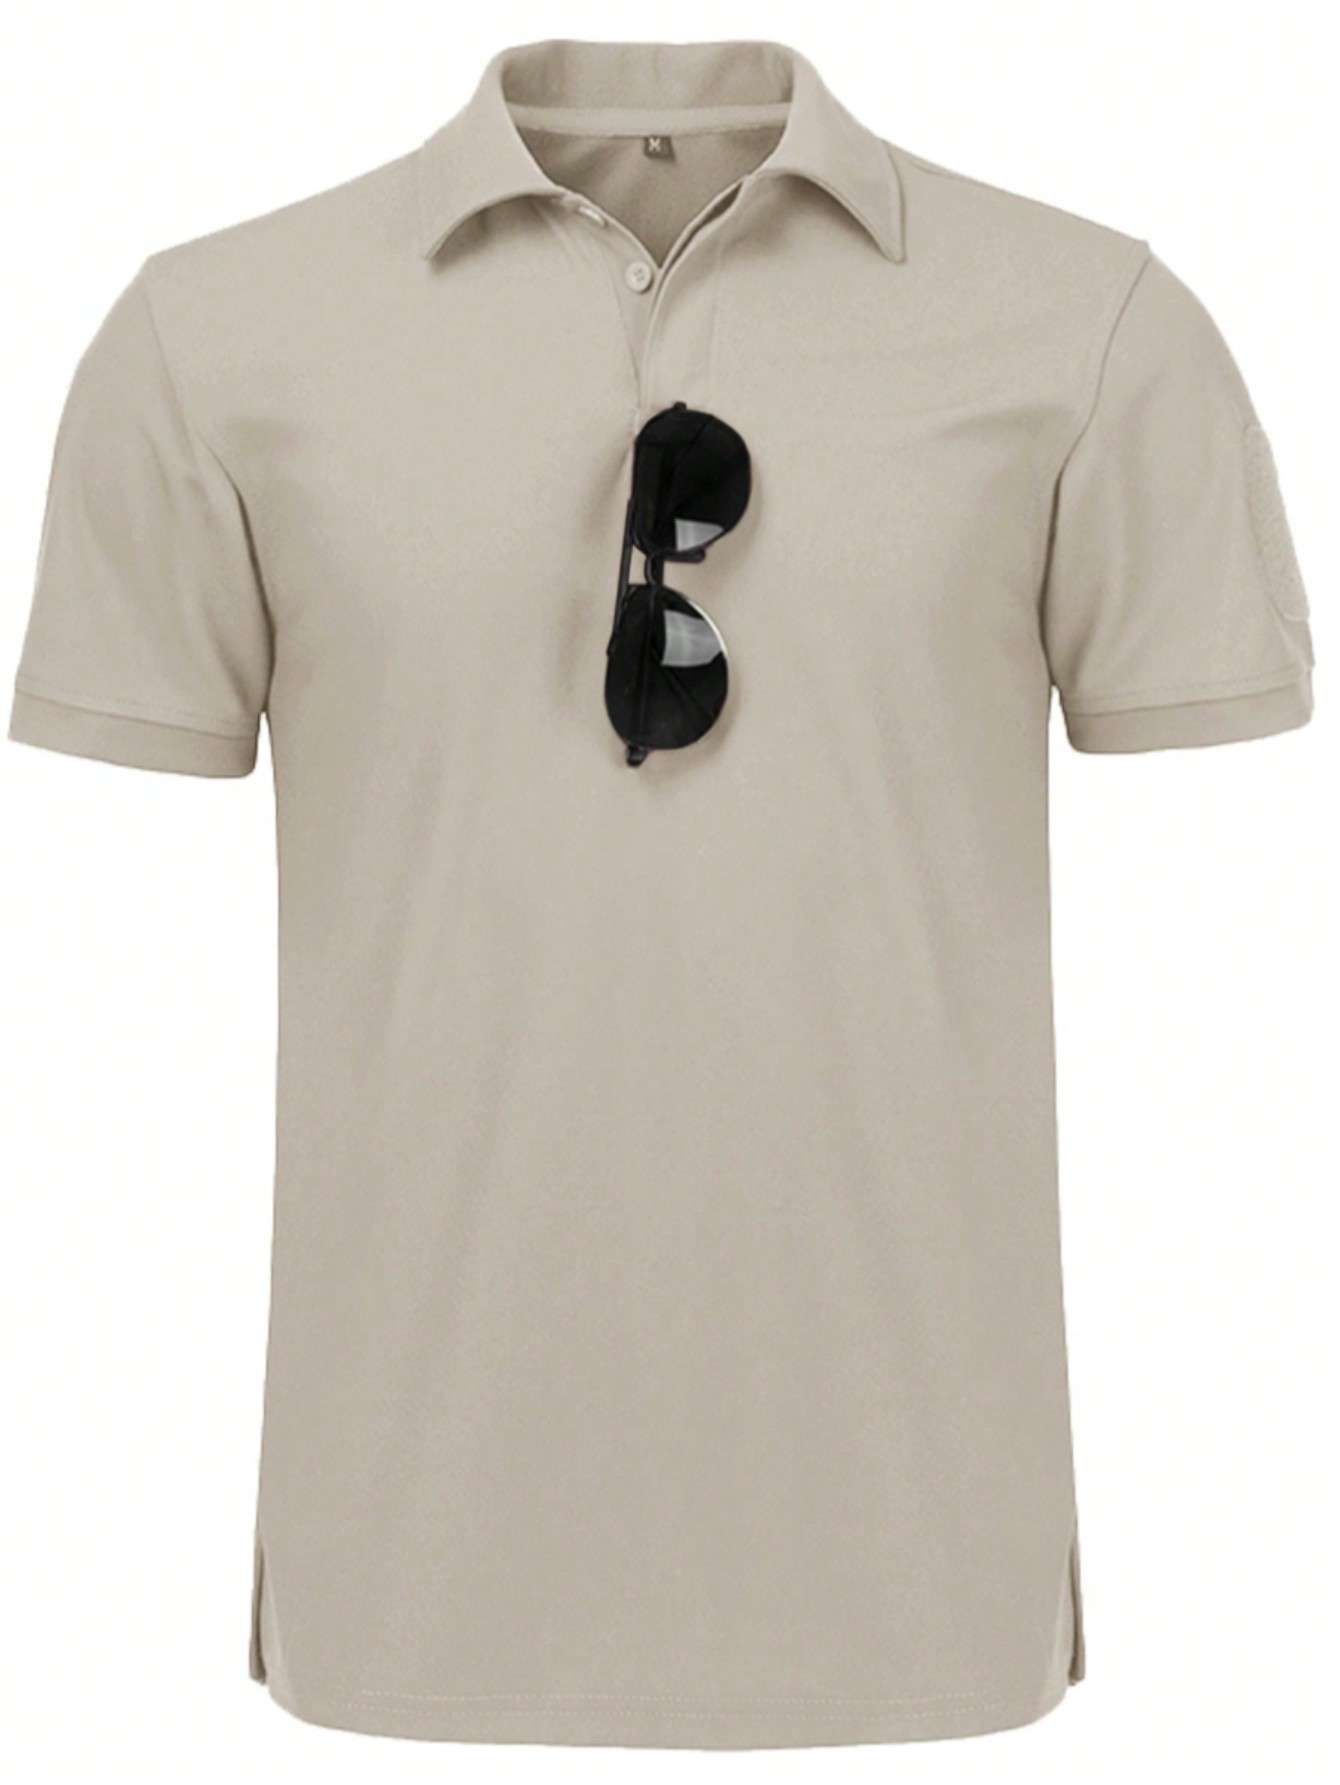 Мужская рубашка поло с коротким рукавом для отдыха, бежевый женская футболка с коротким рукавом быстросохнущая дышащая облегающая футболка для гольфа